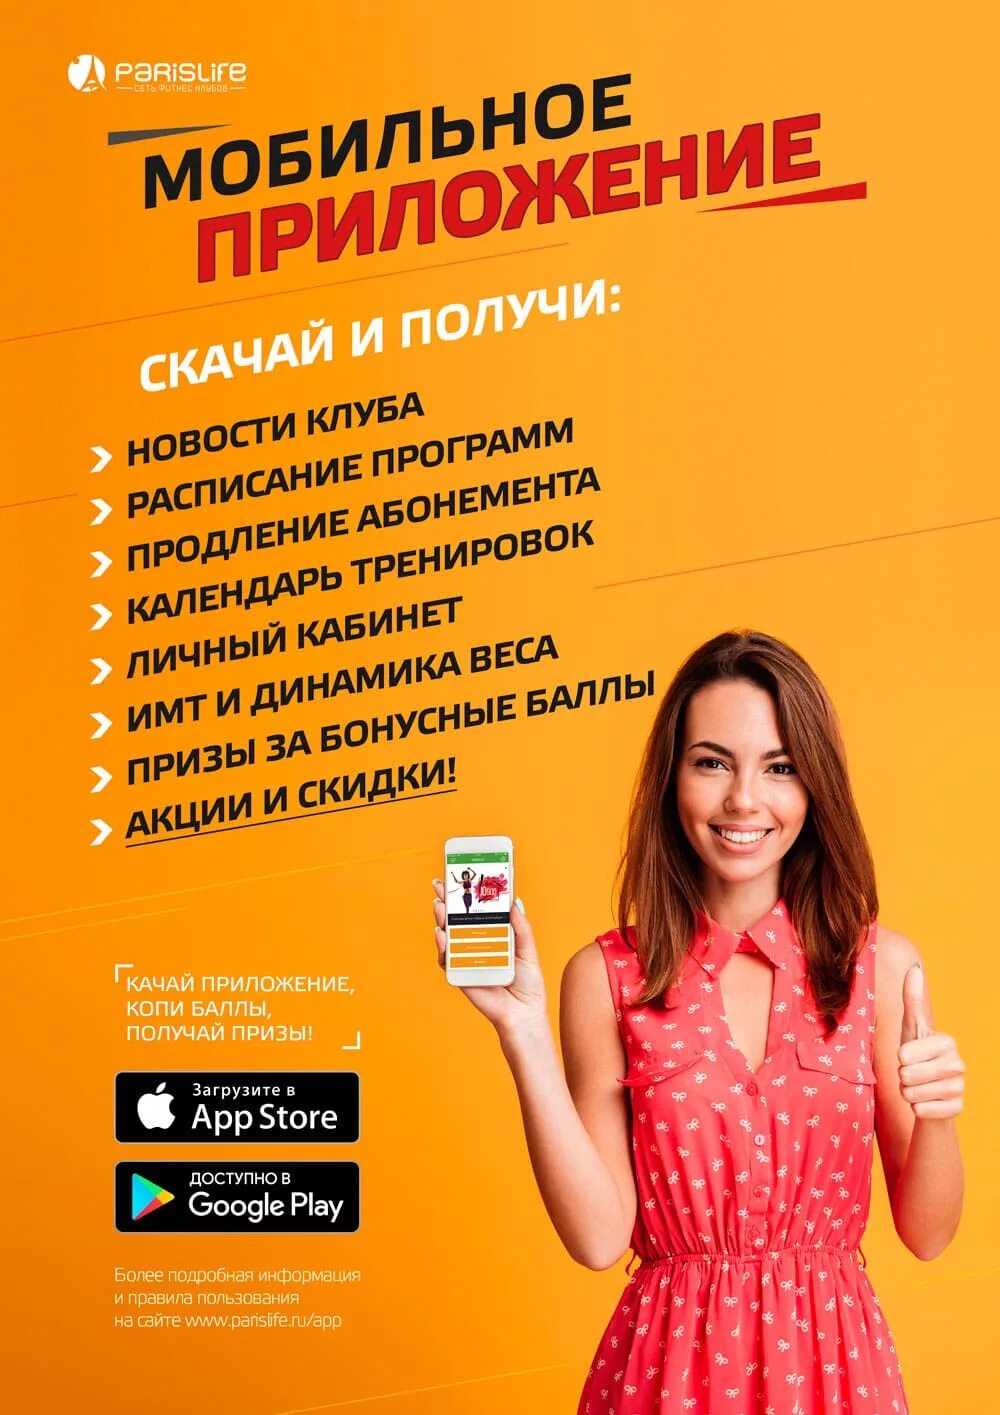 Мобильные объявления. Мобильное приложение. Рекламное приложение. Рекламный плакат мобильного приложения. Реклама прил.